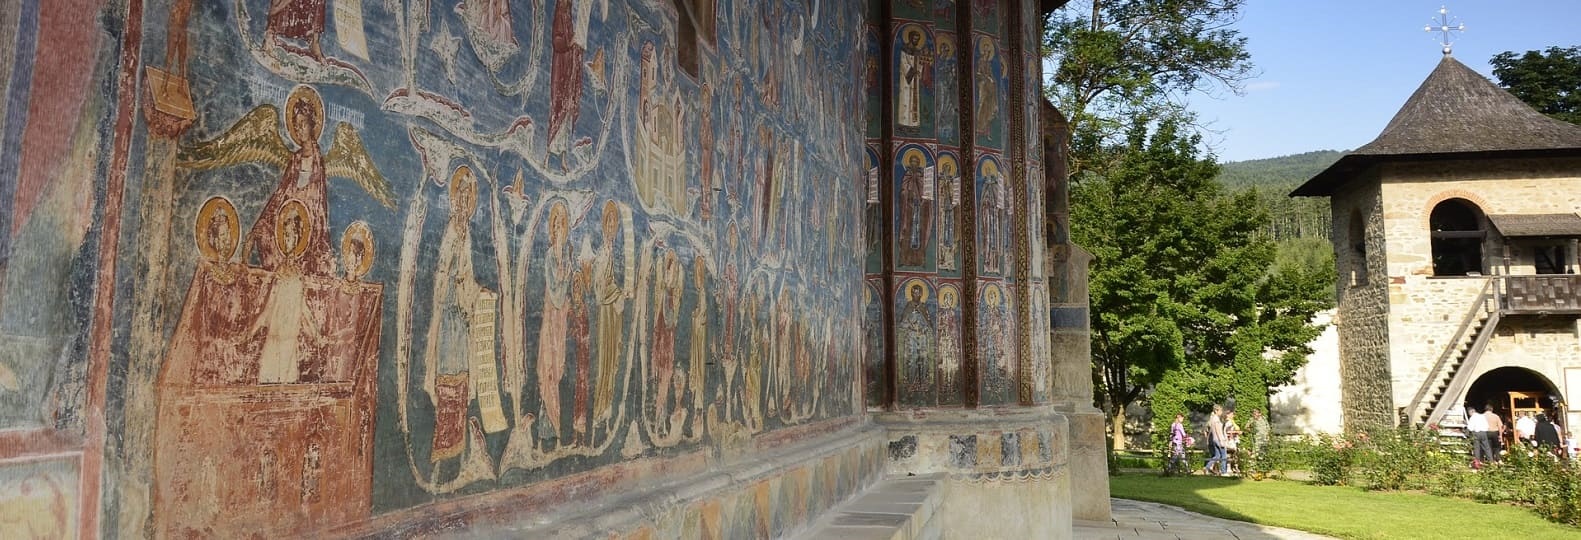 Monastère Voronet Roumanie pèlerinage chrétien<br />
 